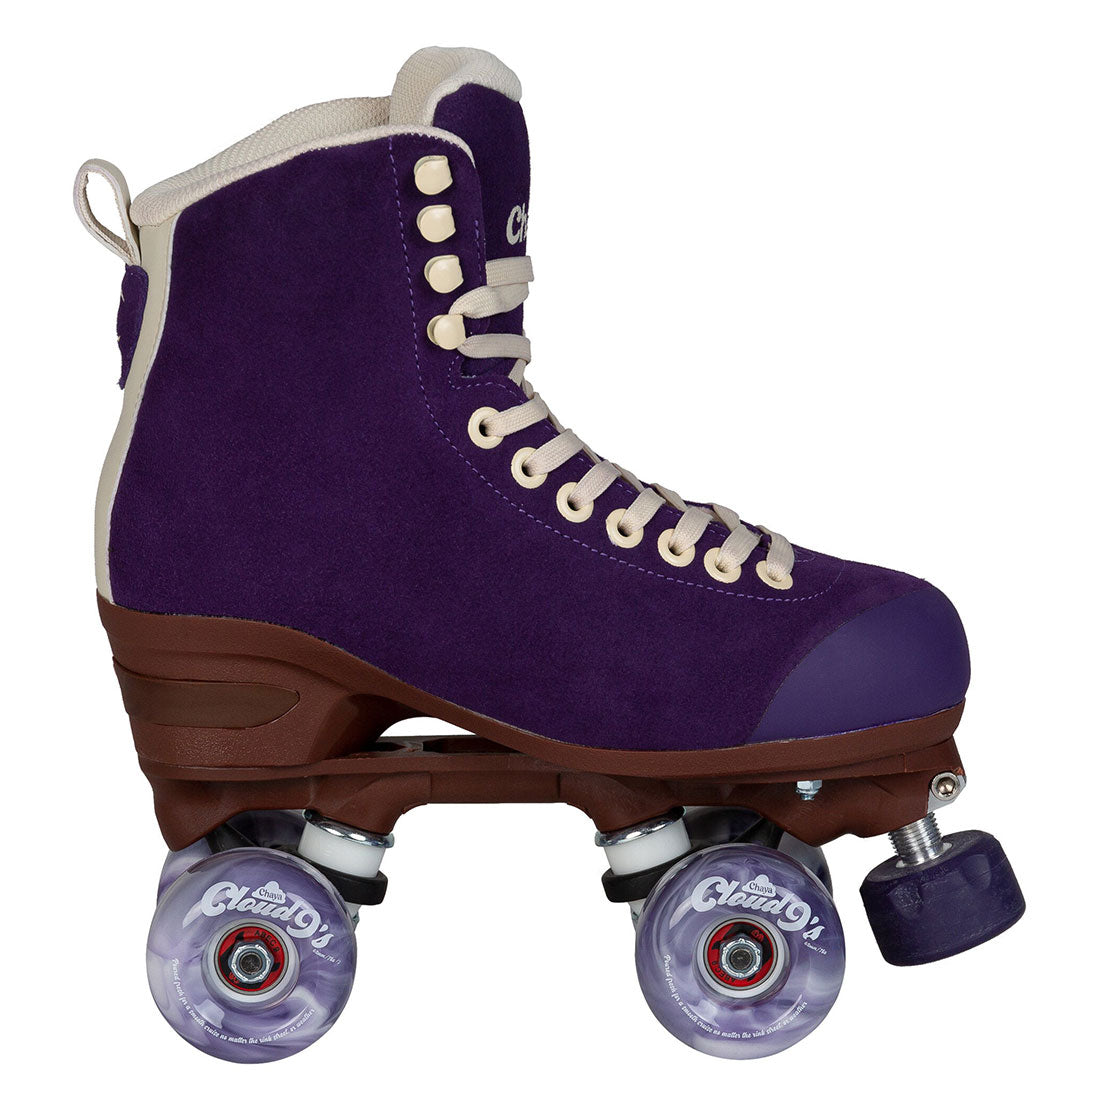 Chaya Melrose Elite Skate - Purple Evil Roller Skates